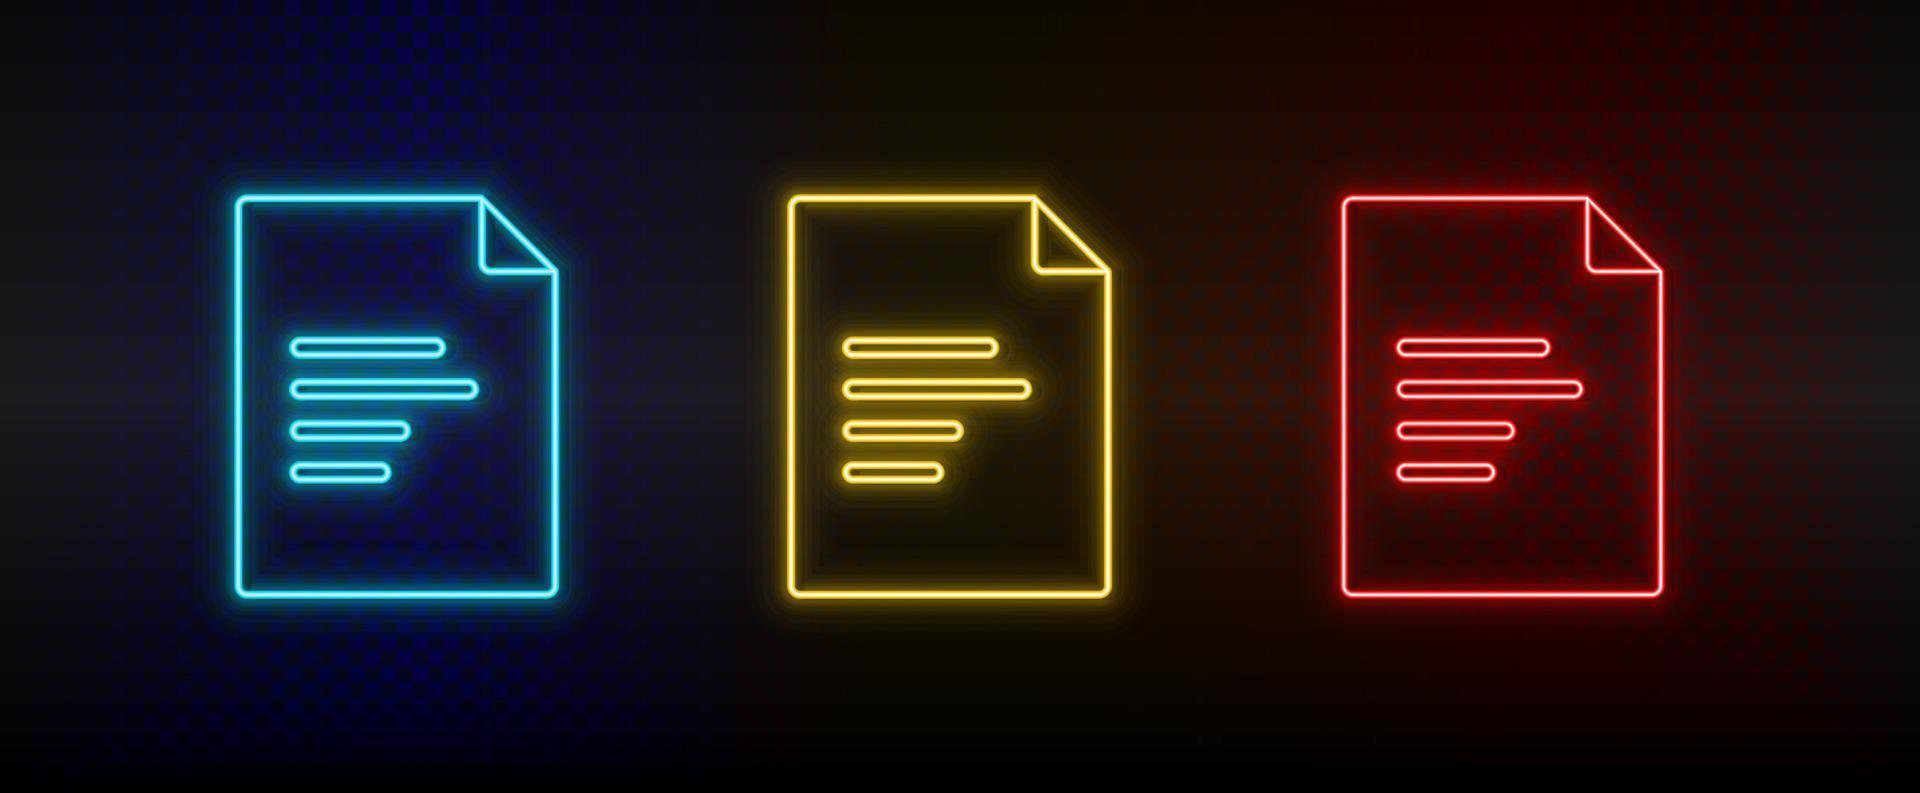 néon ícones, documento. conjunto do vermelho, azul, amarelo néon vetor ícone em escurecer transparente fundo